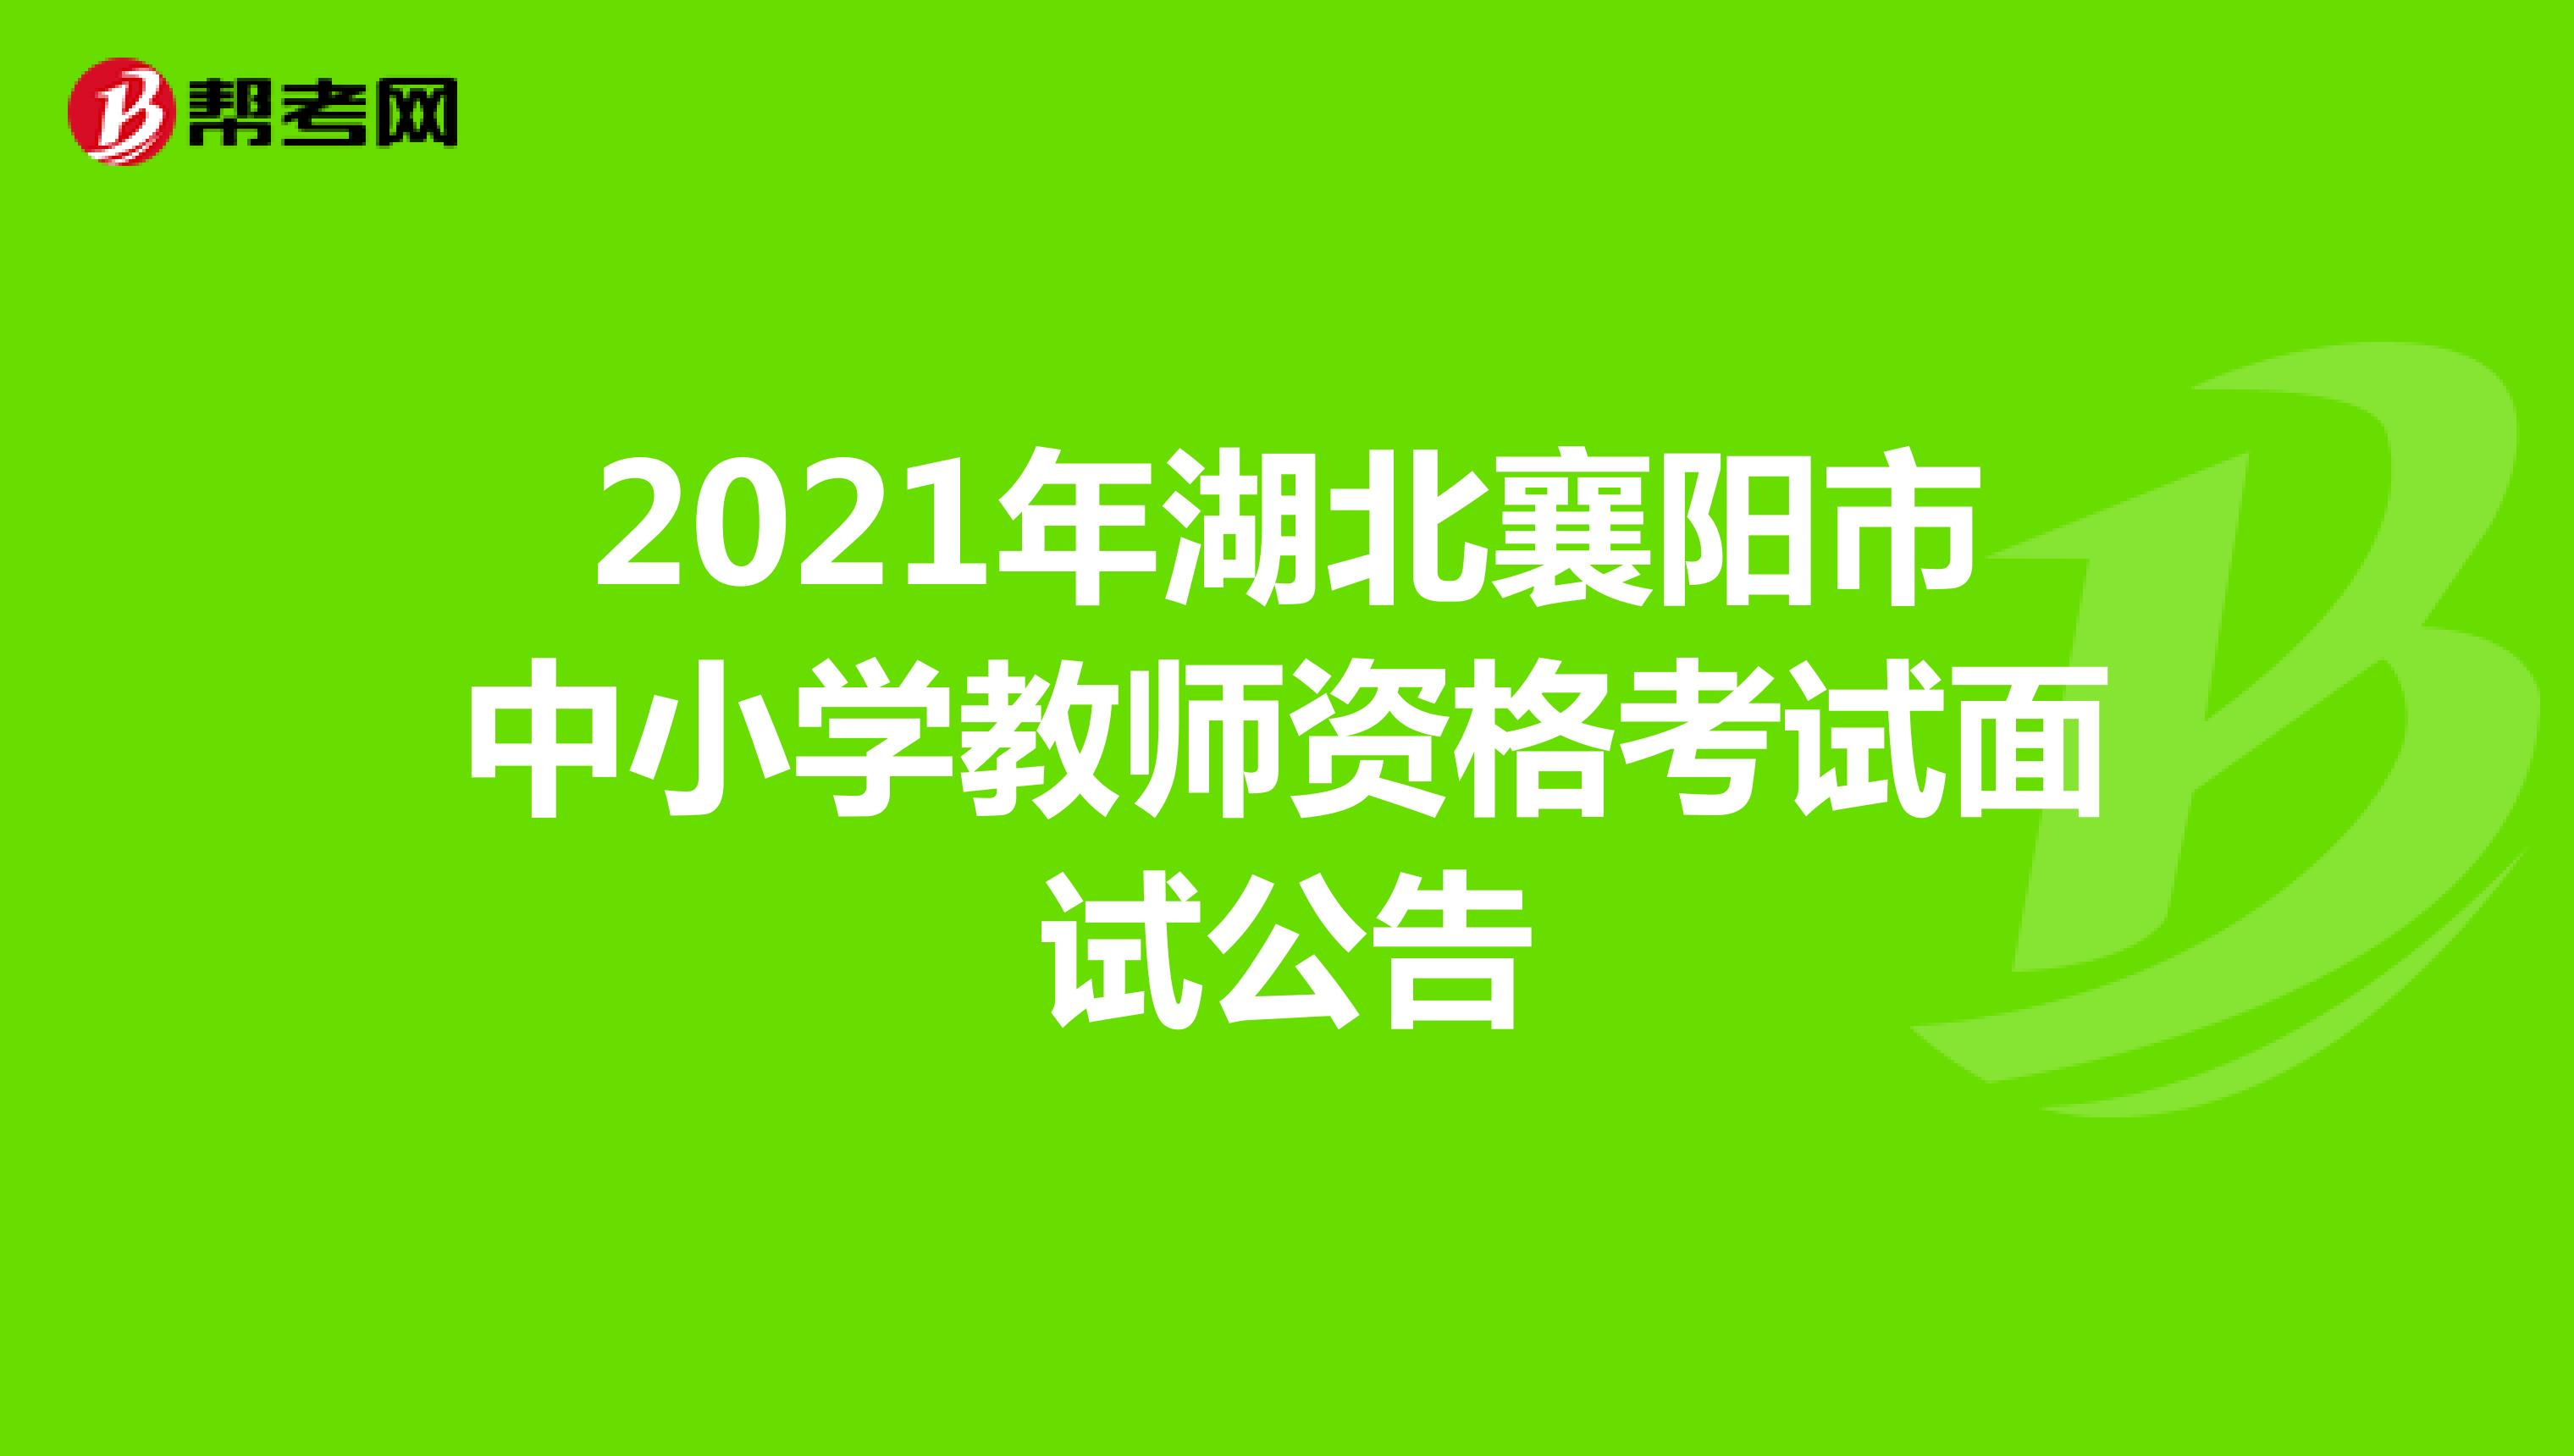 2021年湖北襄阳市中小学教师资格考试面试公告